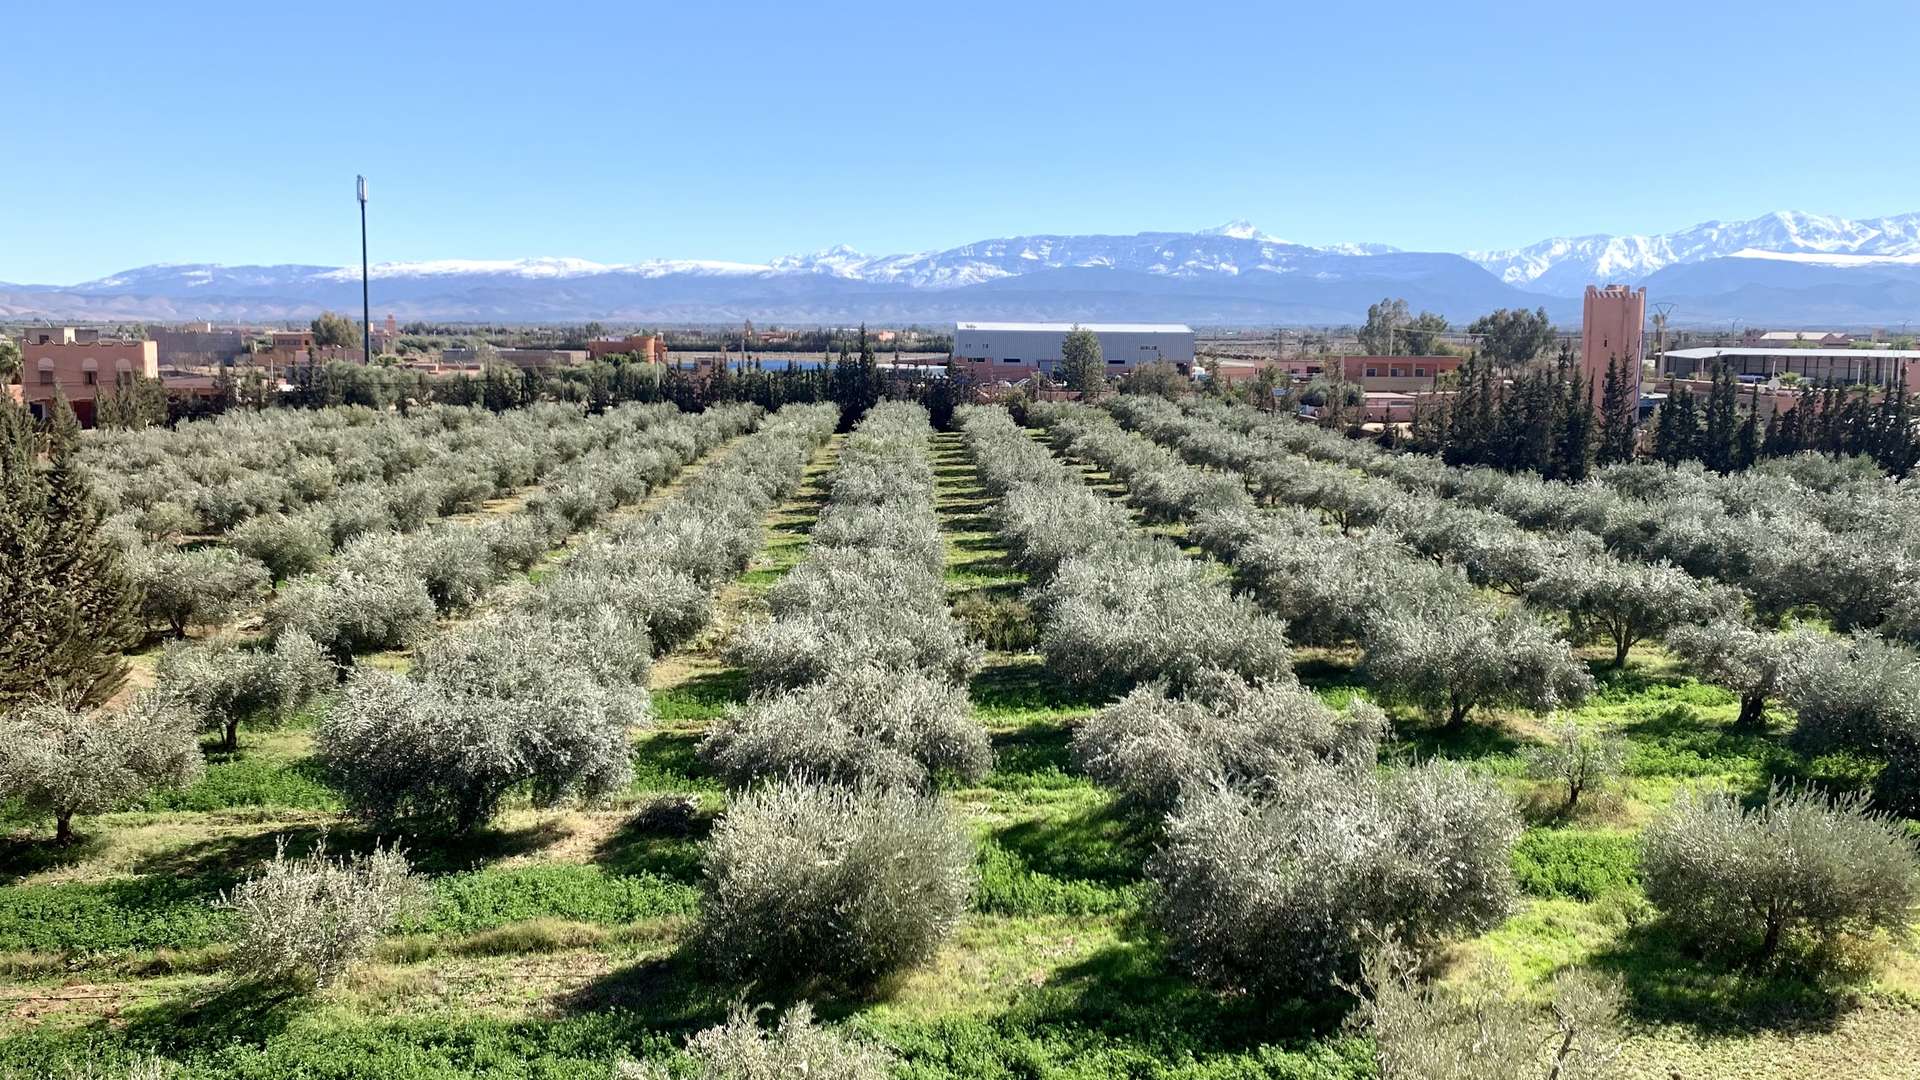 Vente,Terrains & Fermes,Ferme 4 ha plantée d’oliviers avec maison traditionnelle de 5 chambres ,Marrakech,Route de l'Ourika